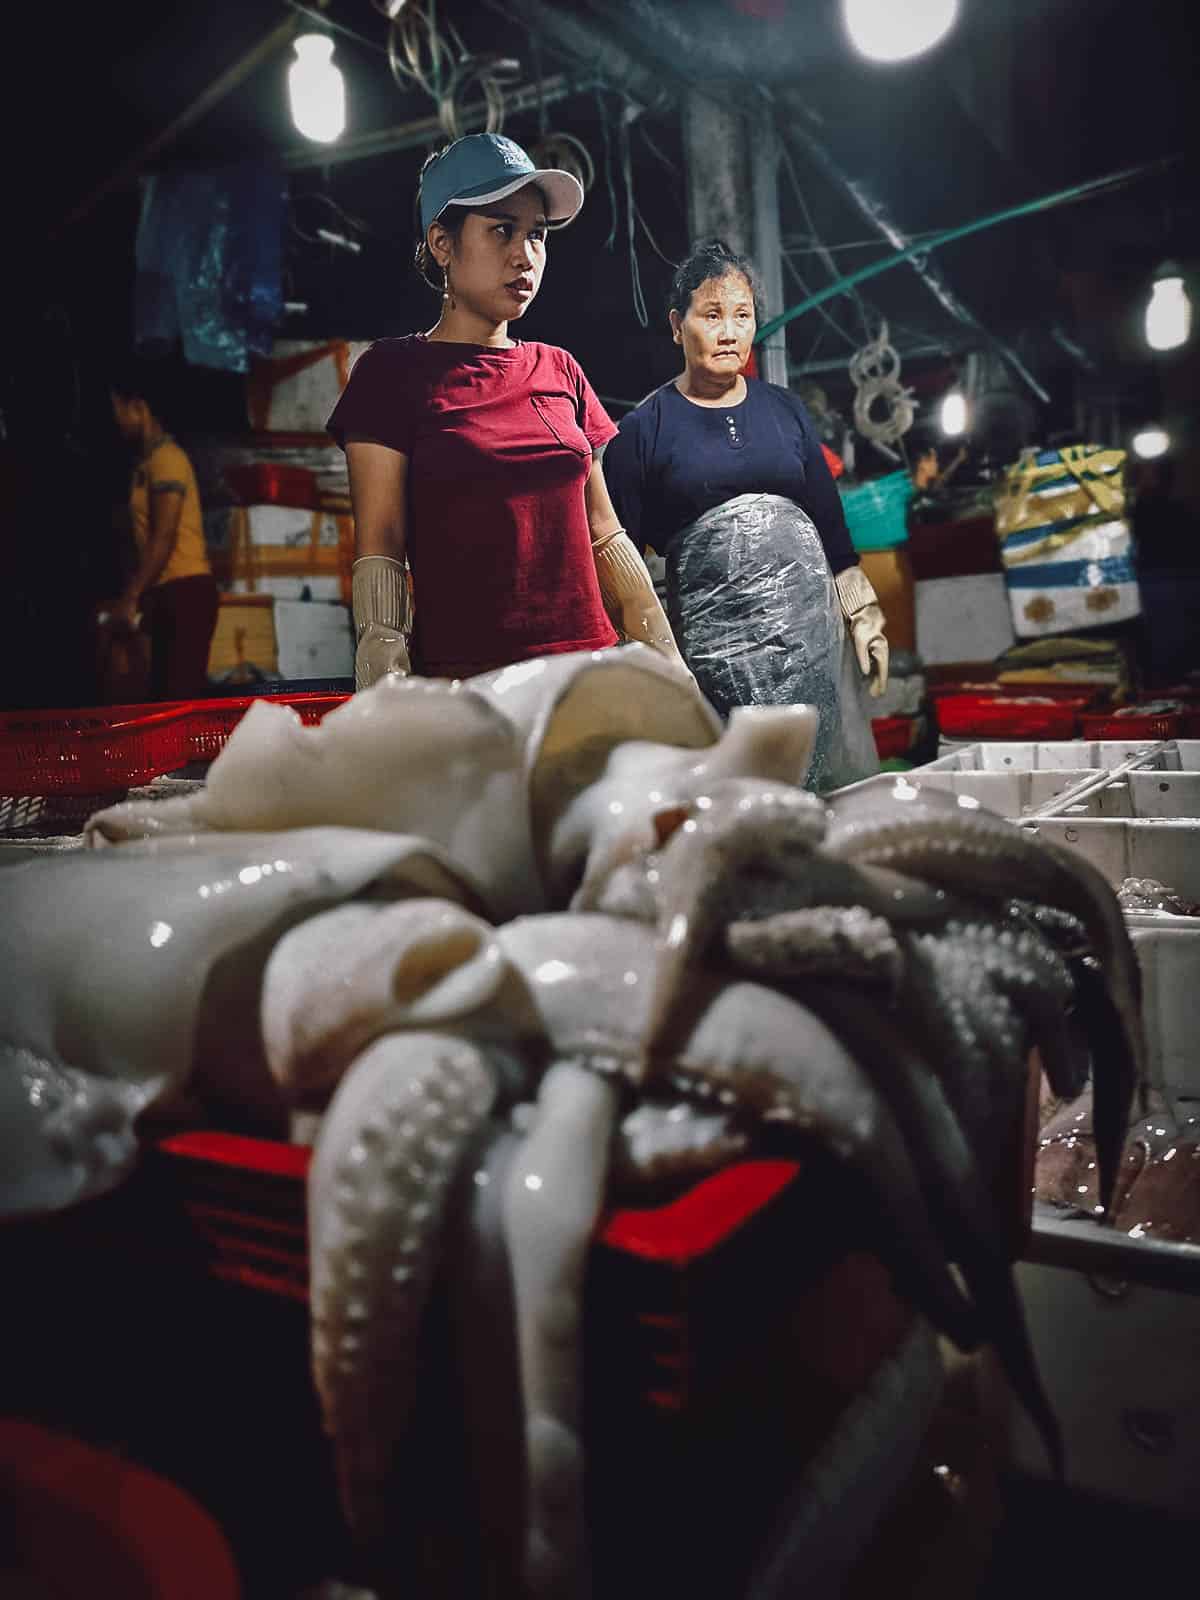 Hanoi Food Tour: Explore Hanoi’s Best Markets with A Chef’s Tour